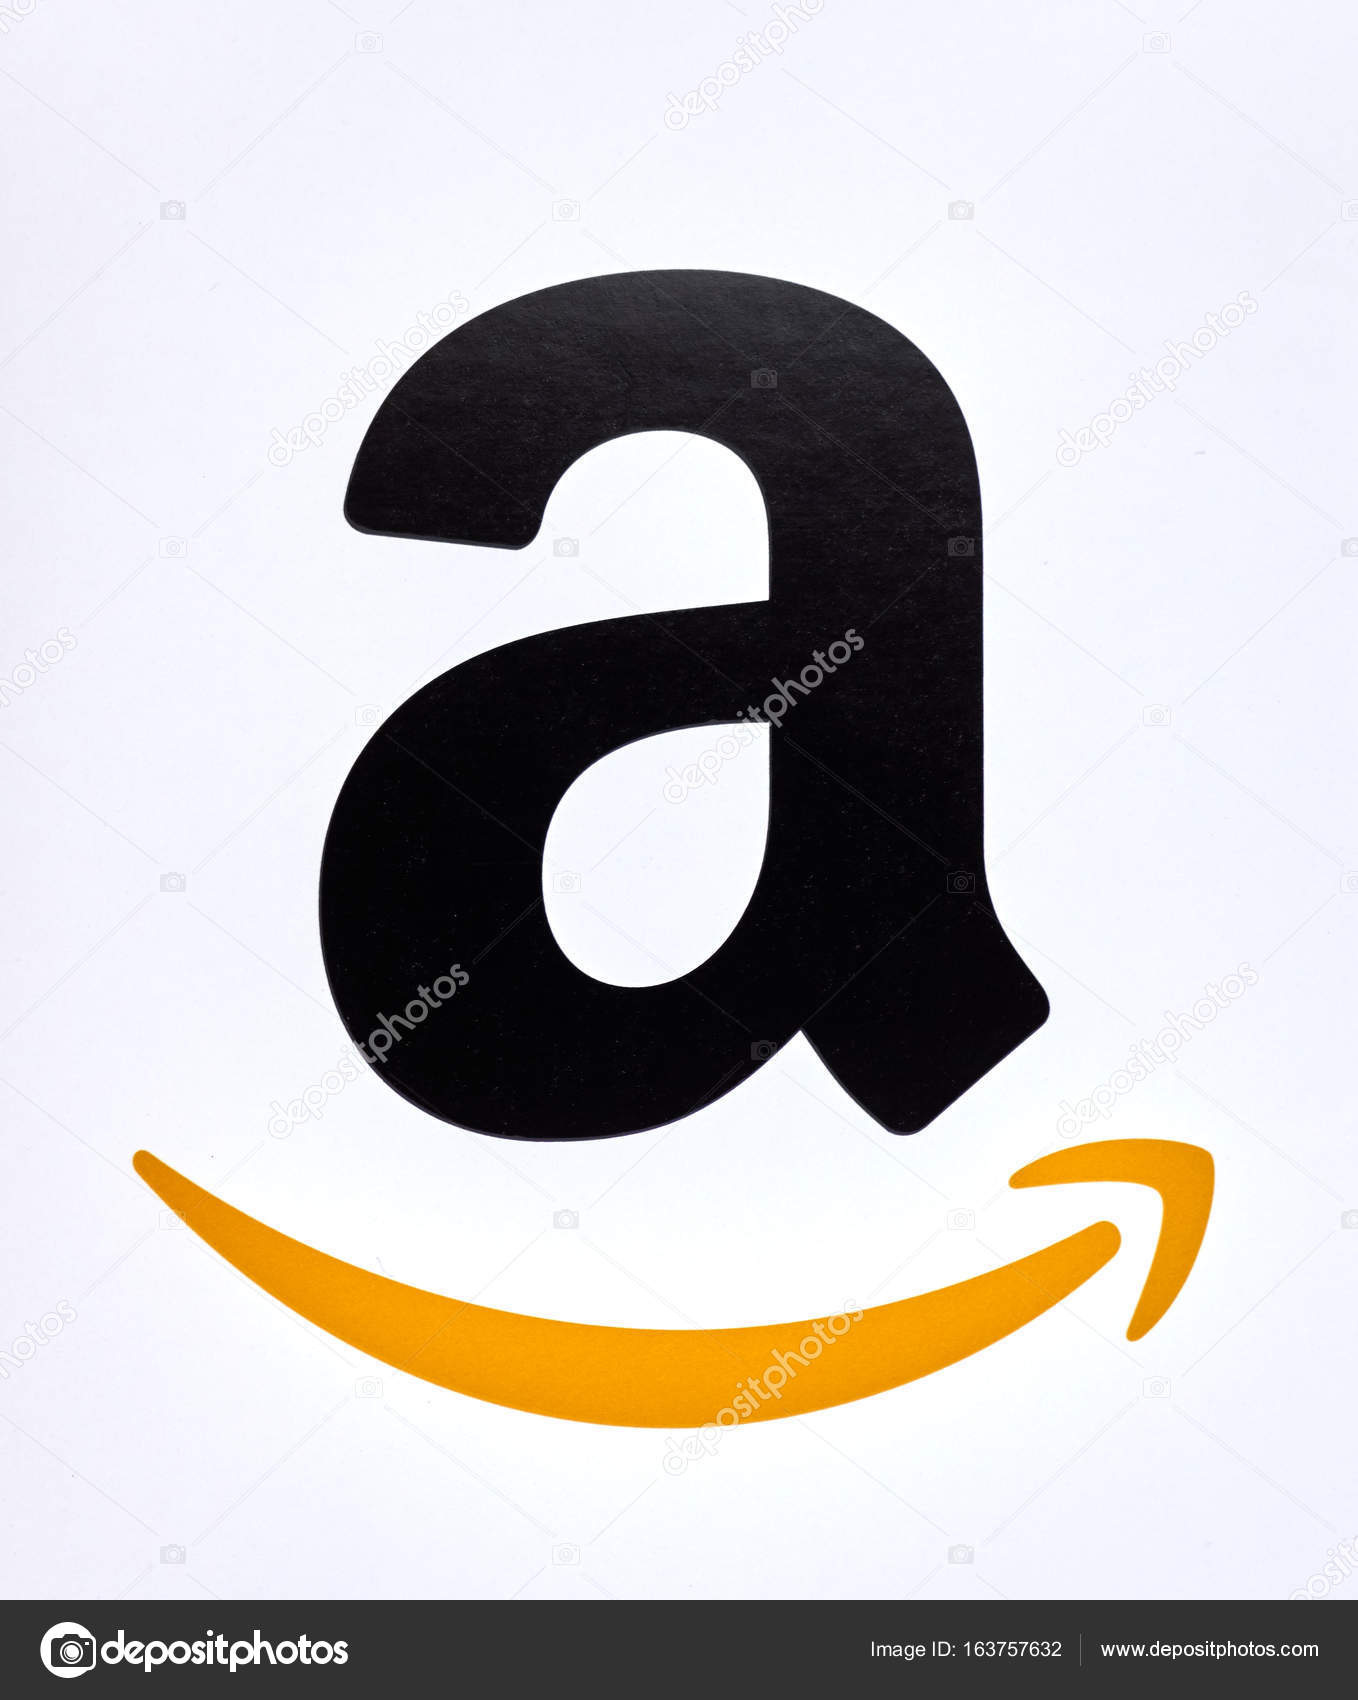 Amazon logo on a white background. – Stock Editorial Photo ...